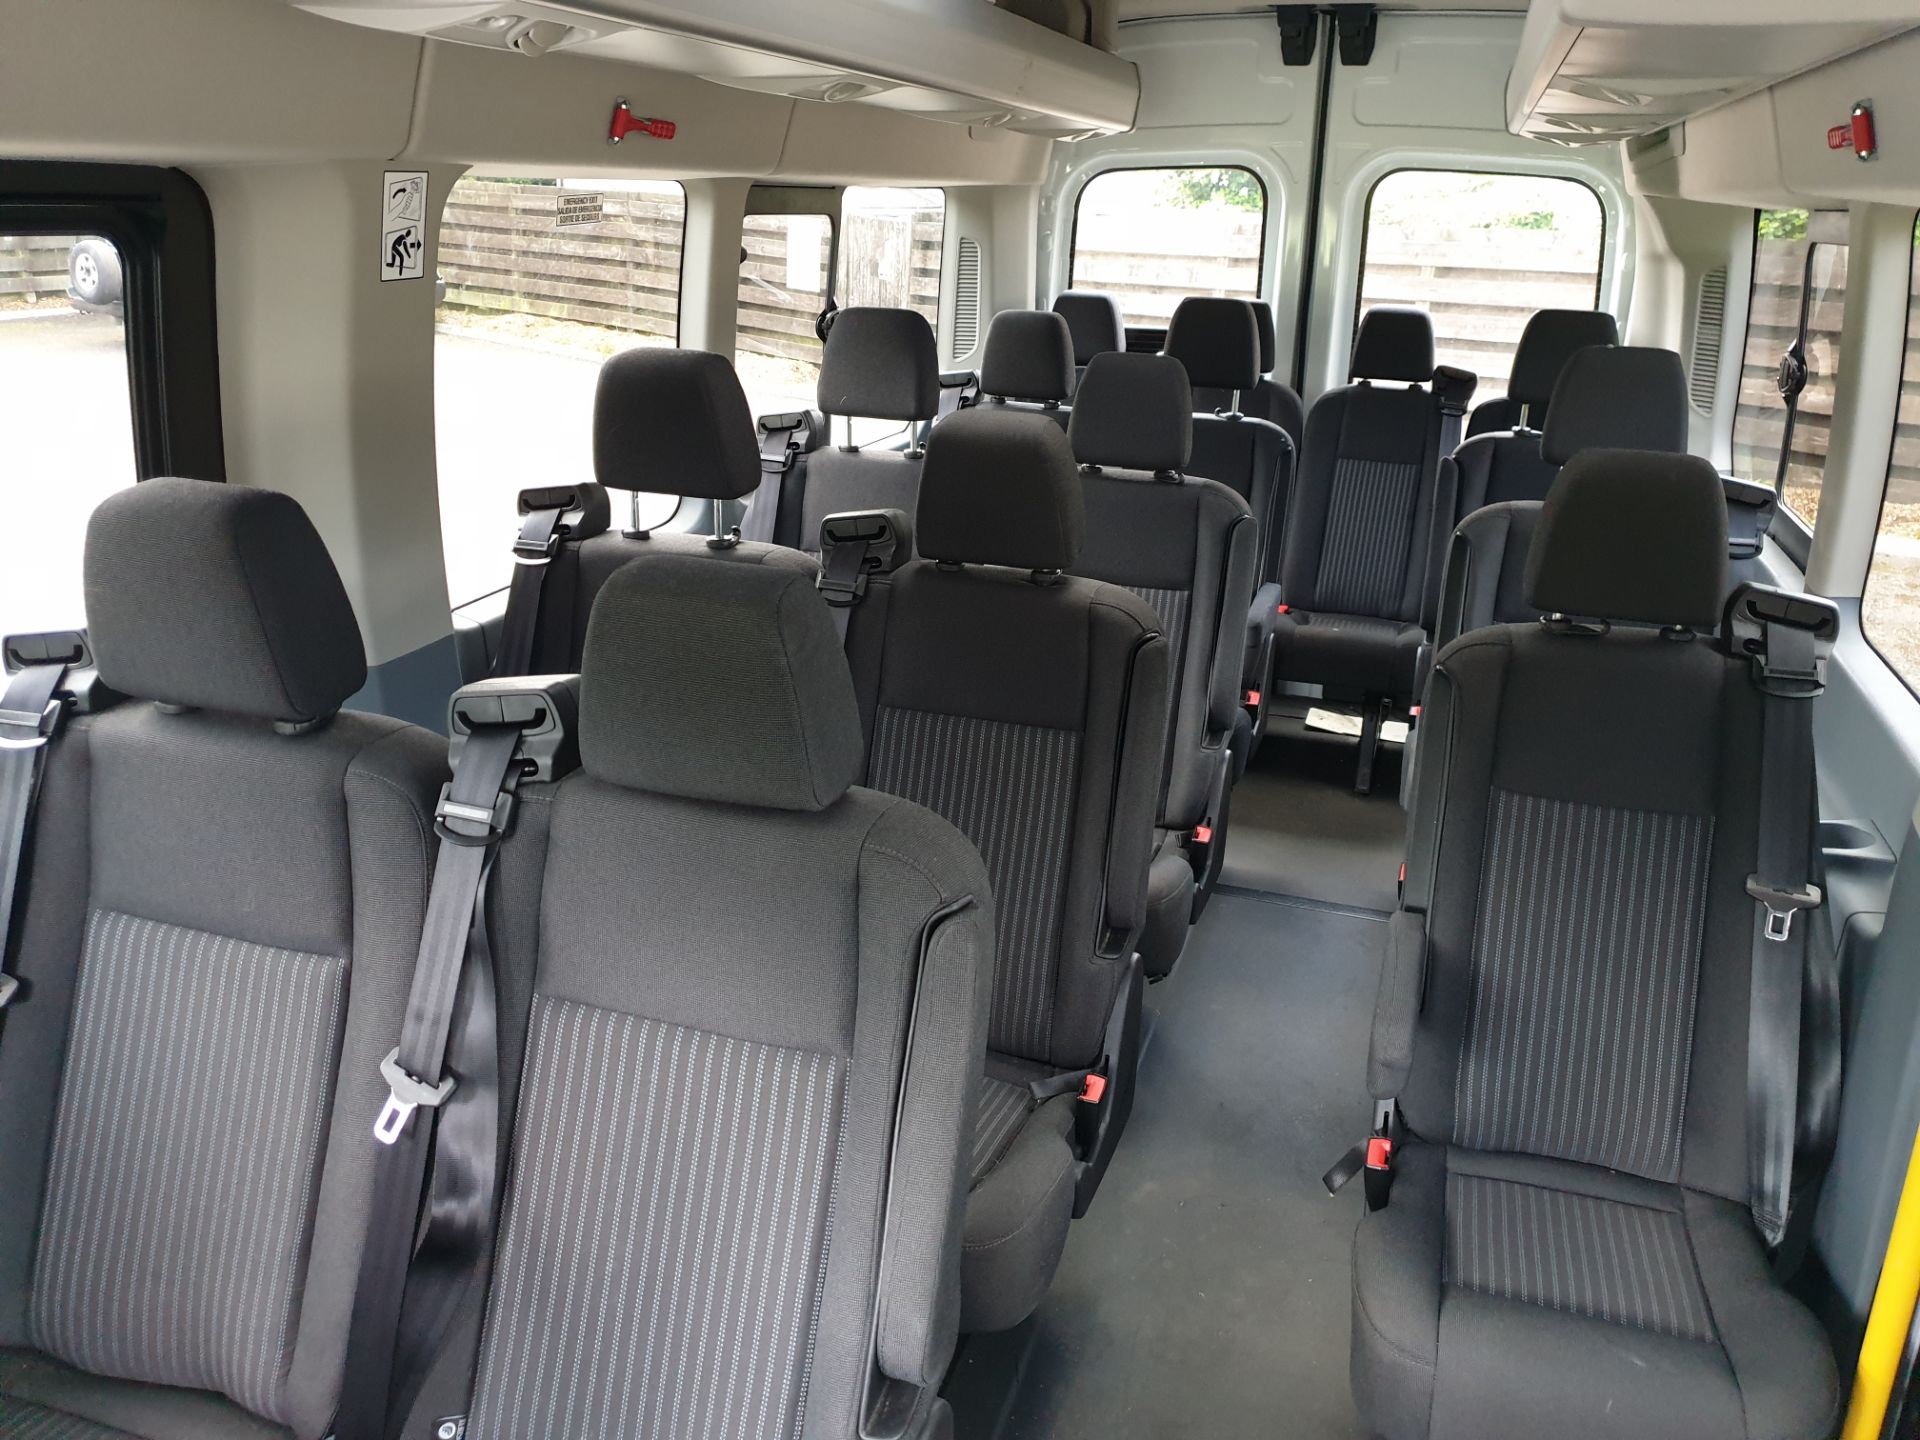 2017 / 67 Ford Transit 16 Seat Mini Bus - Image 20 of 28